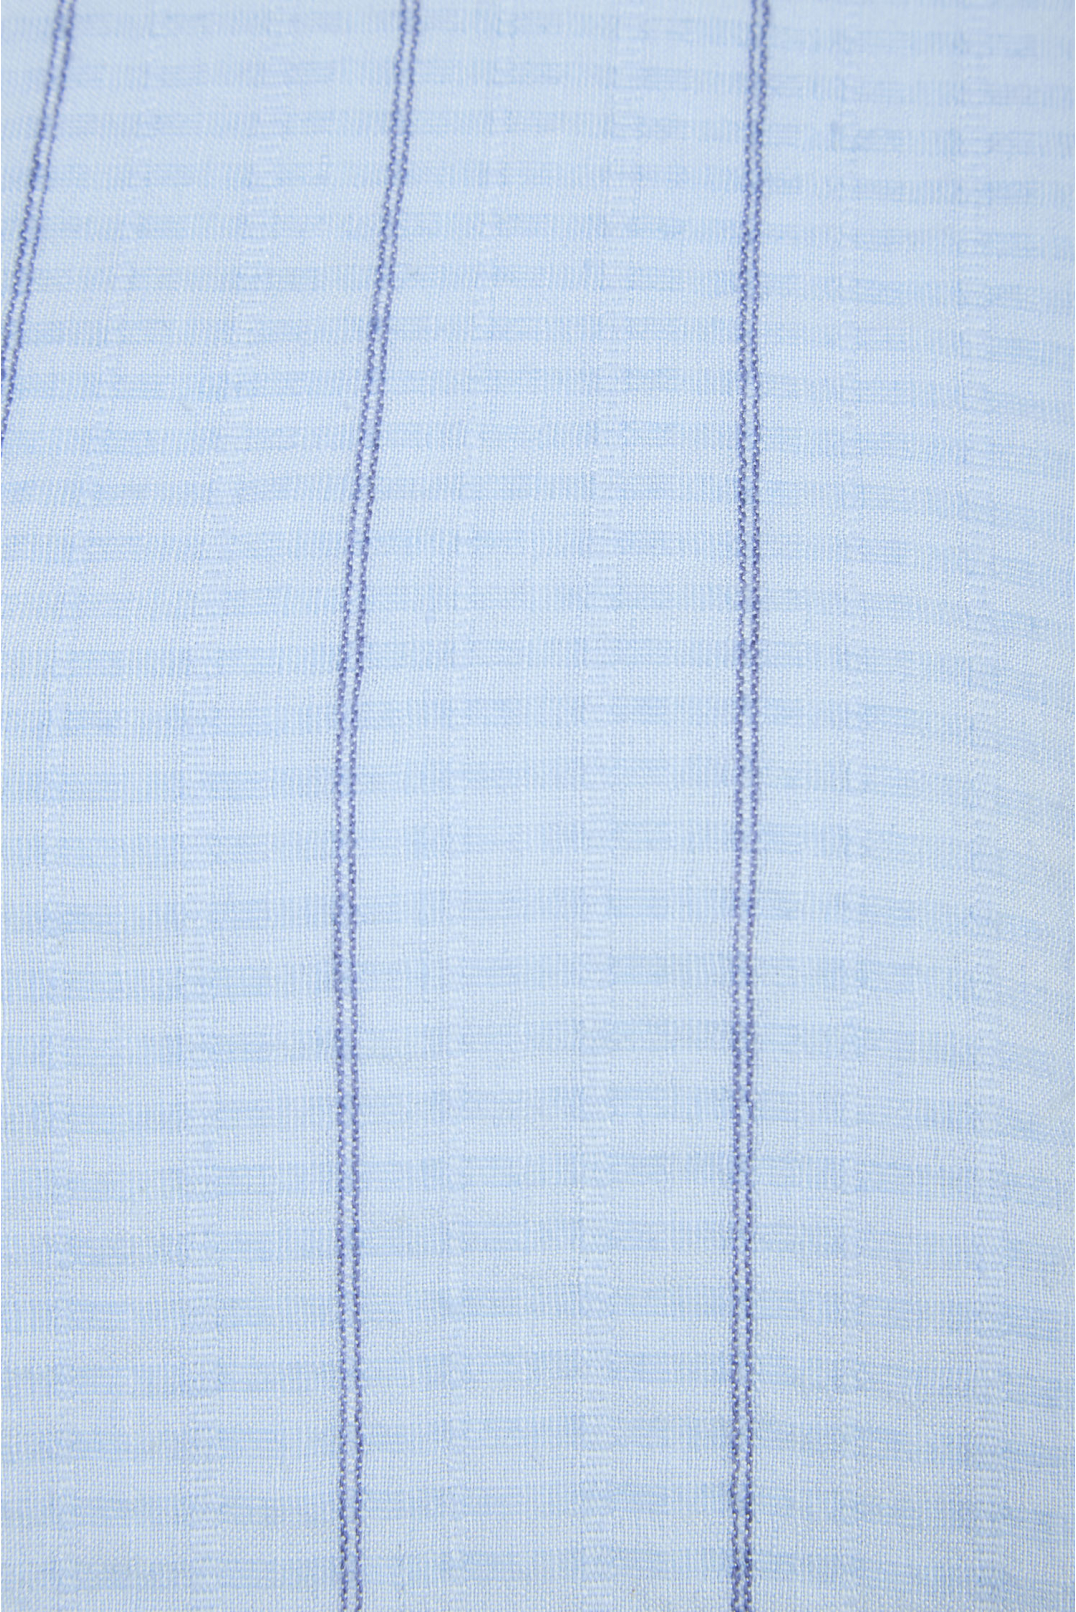 Женская голубая блуза в полоску - 3